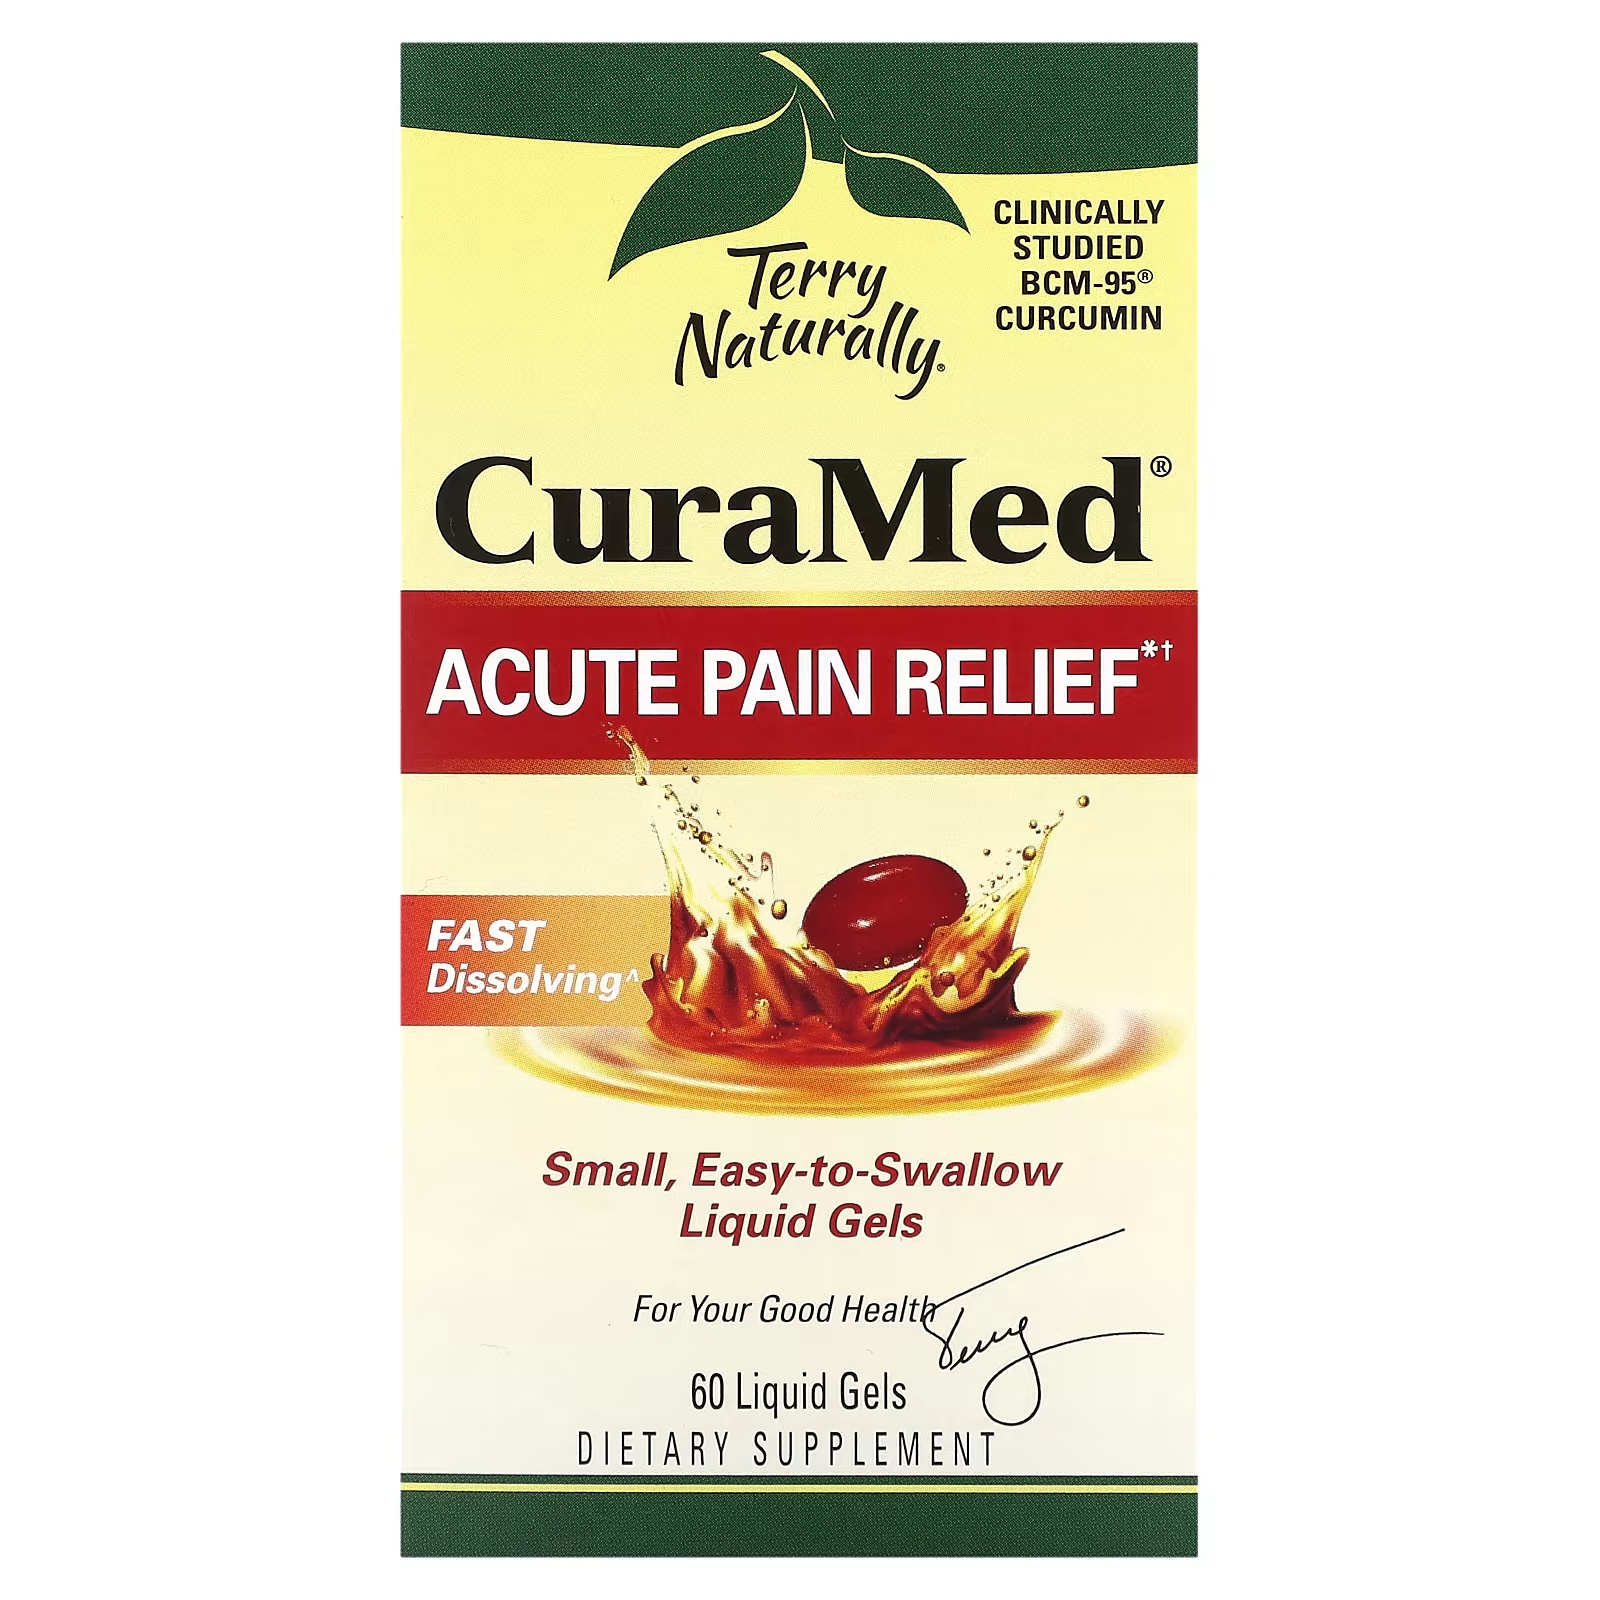 Обезболивающее средство Terry Naturally CuraMed от острой боли, 60 жидких гелей обезболивающее средство terry naturally curamed от острой боли 60 жидких гелей